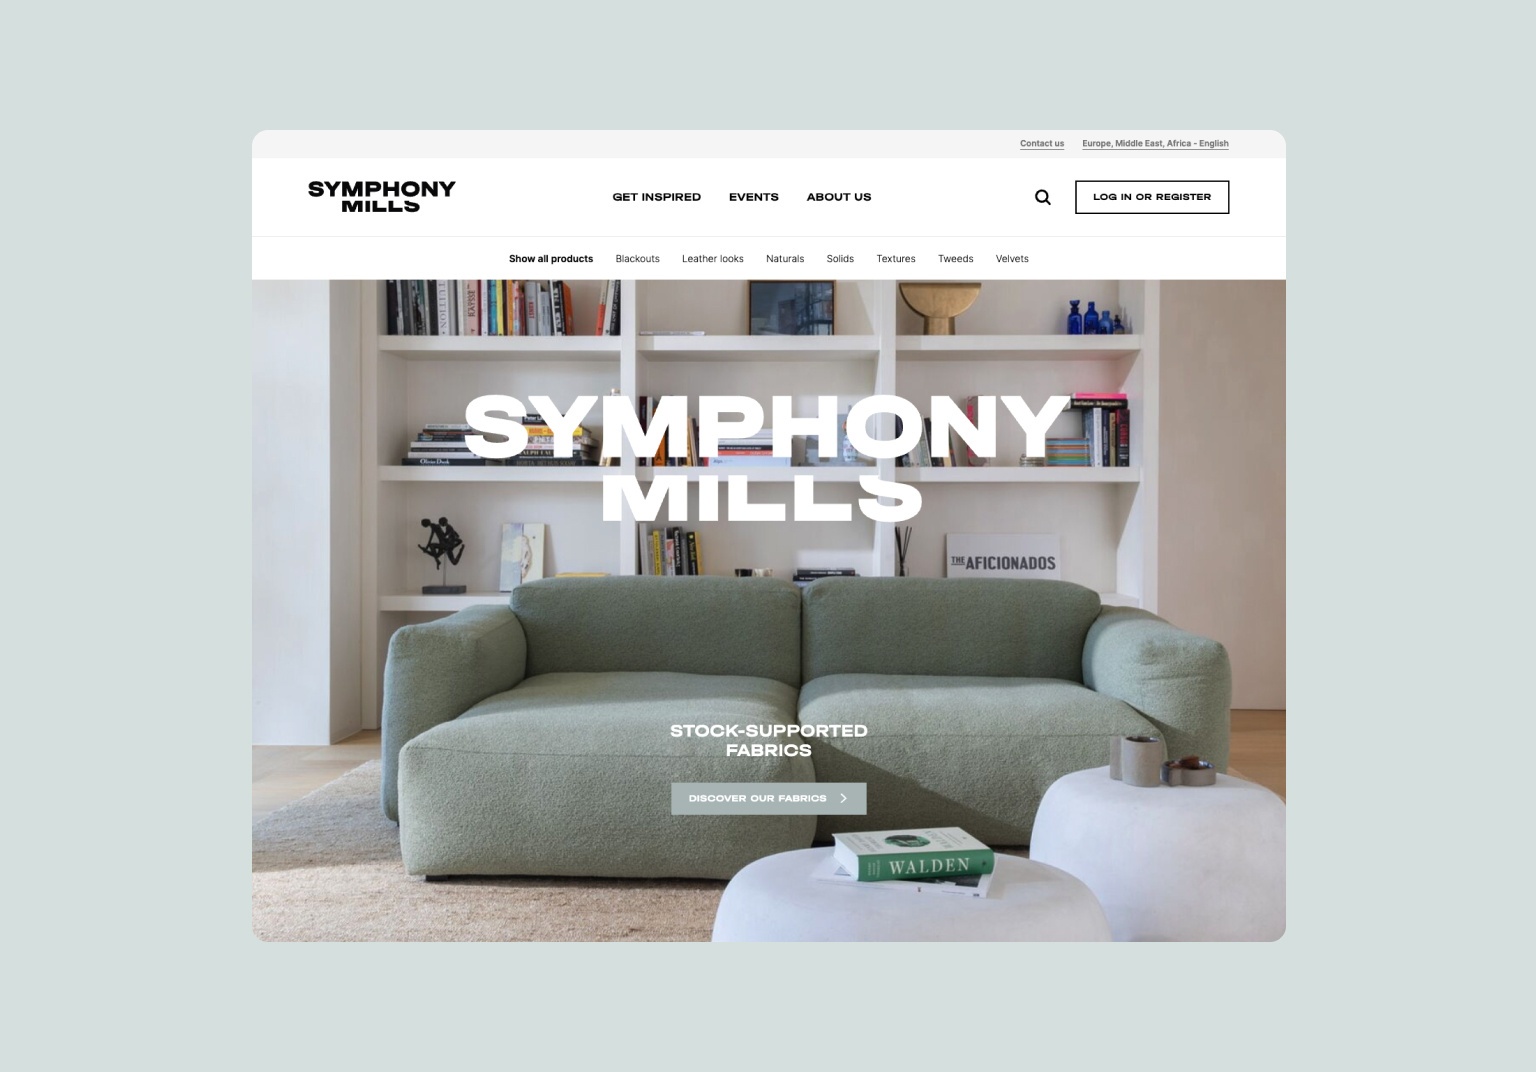 make it fly - Symphony mills - case